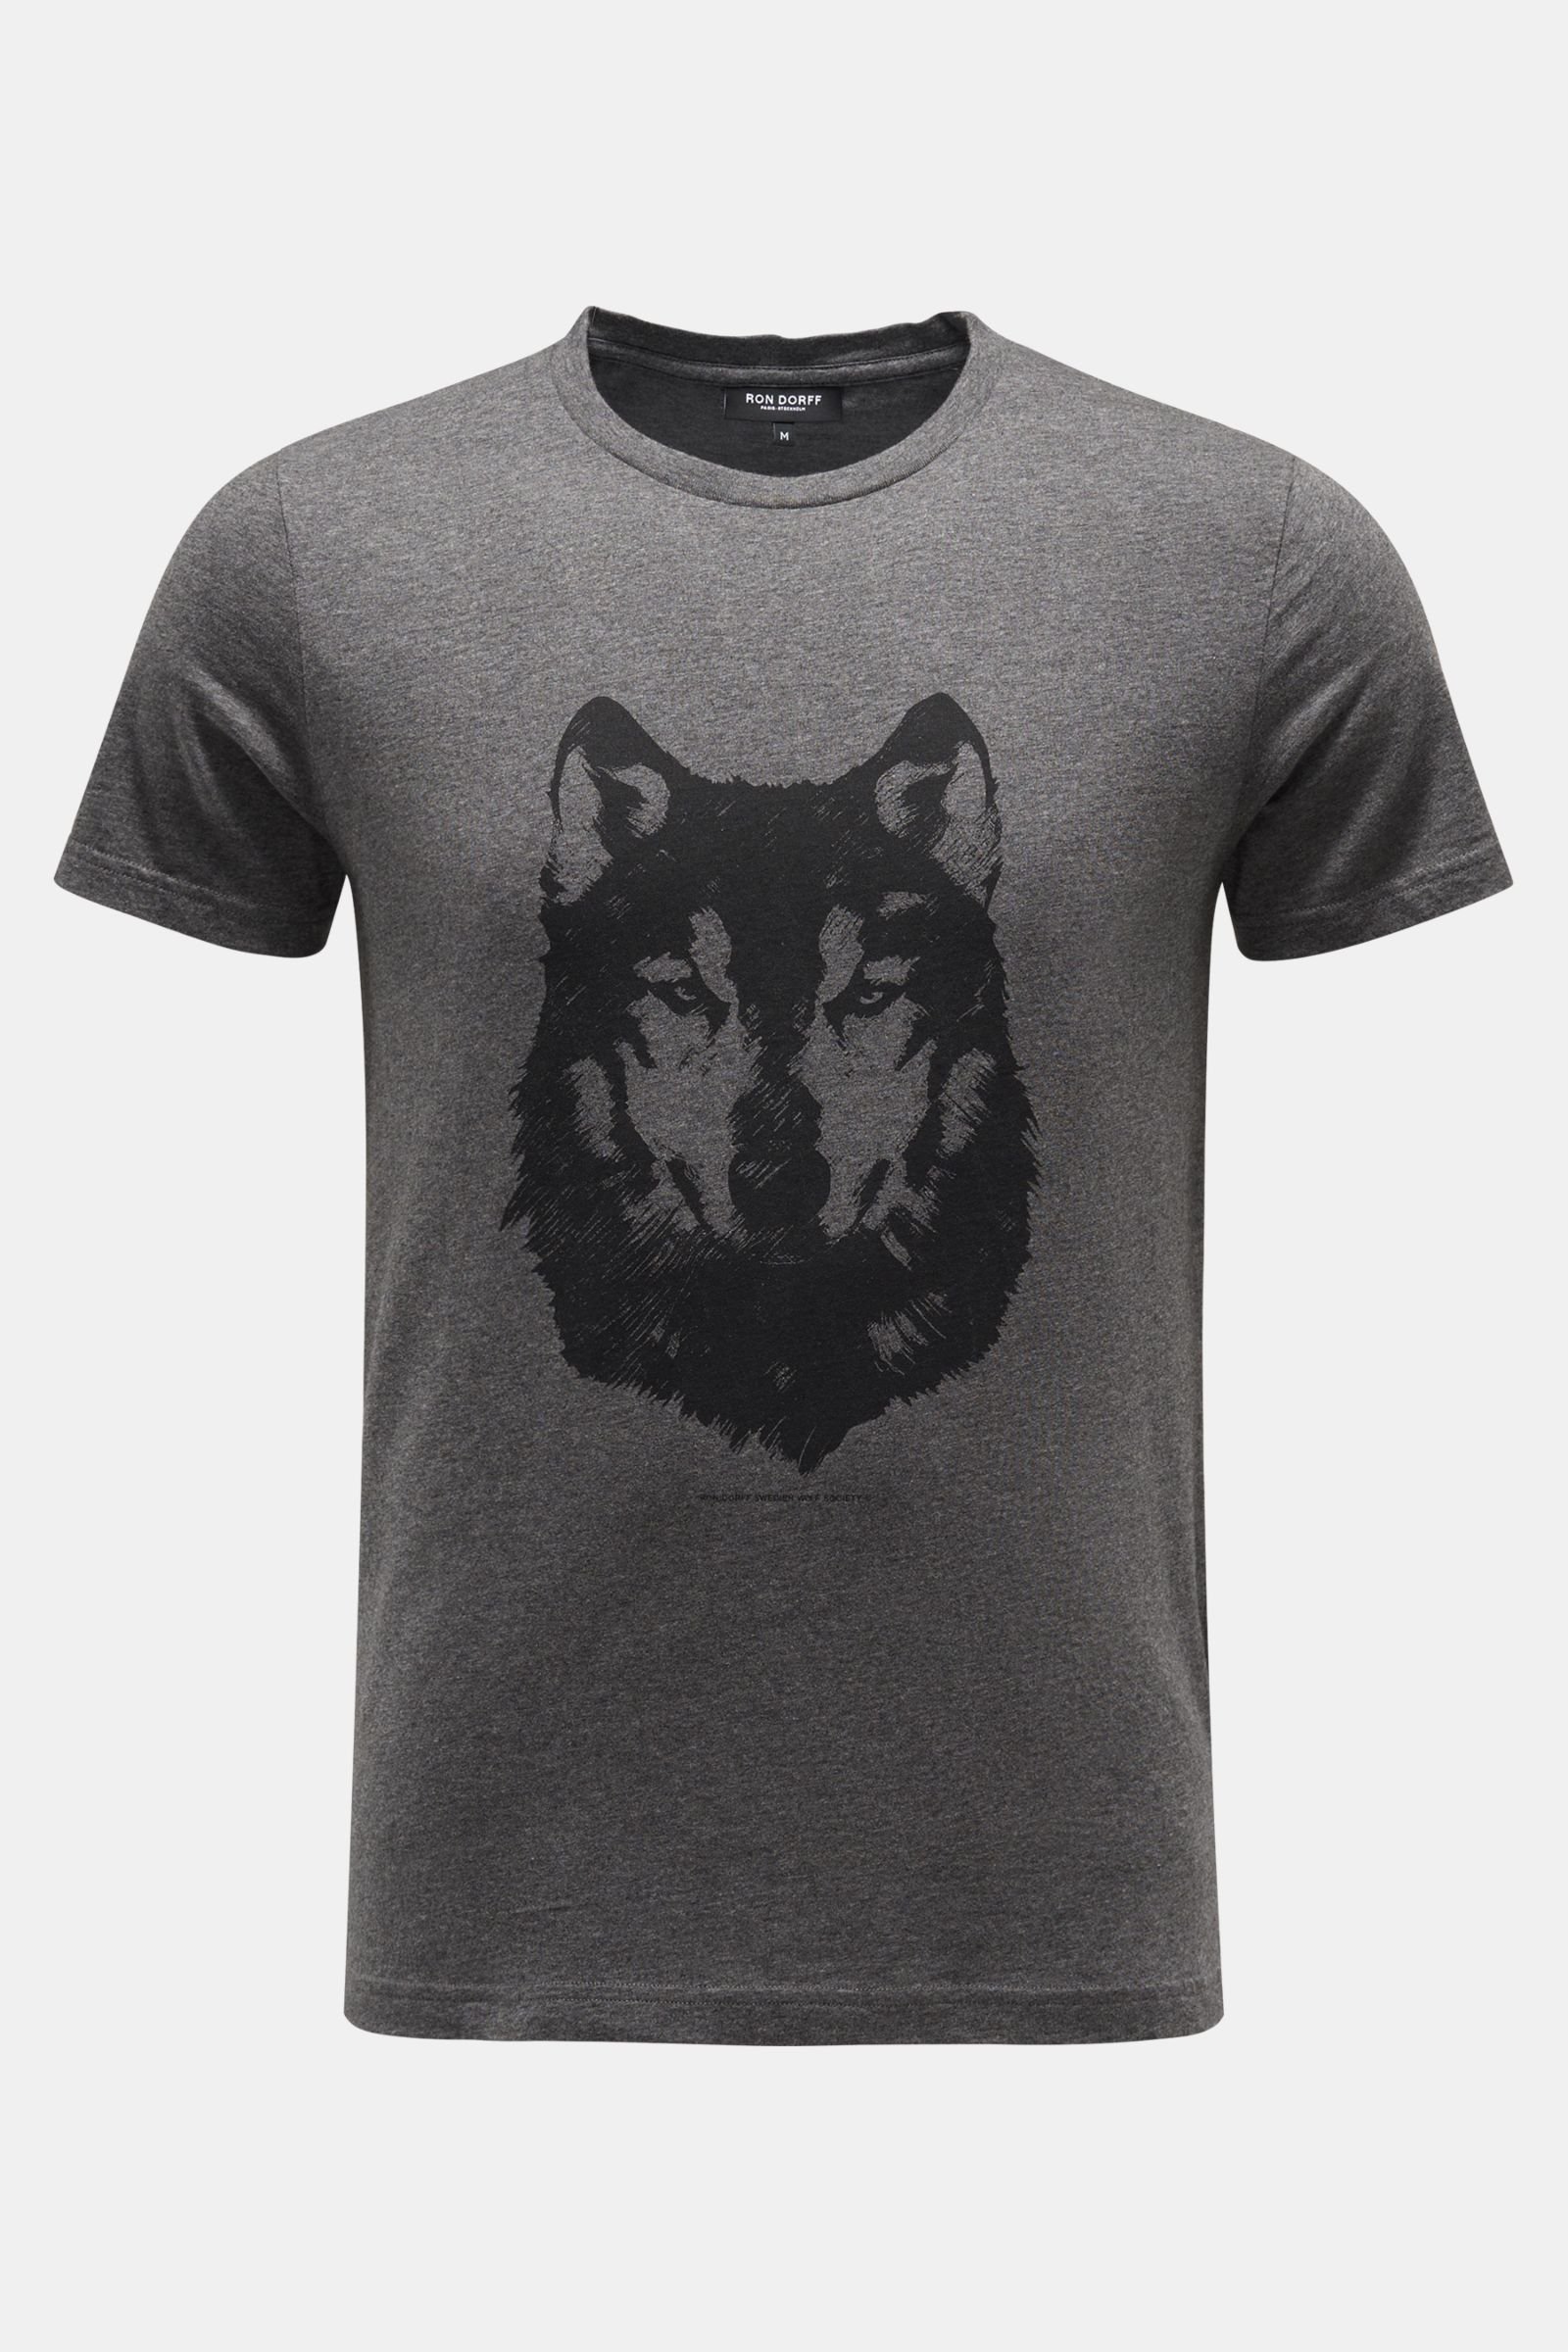 Crew neck T-shirt 'Wolf' dark grey